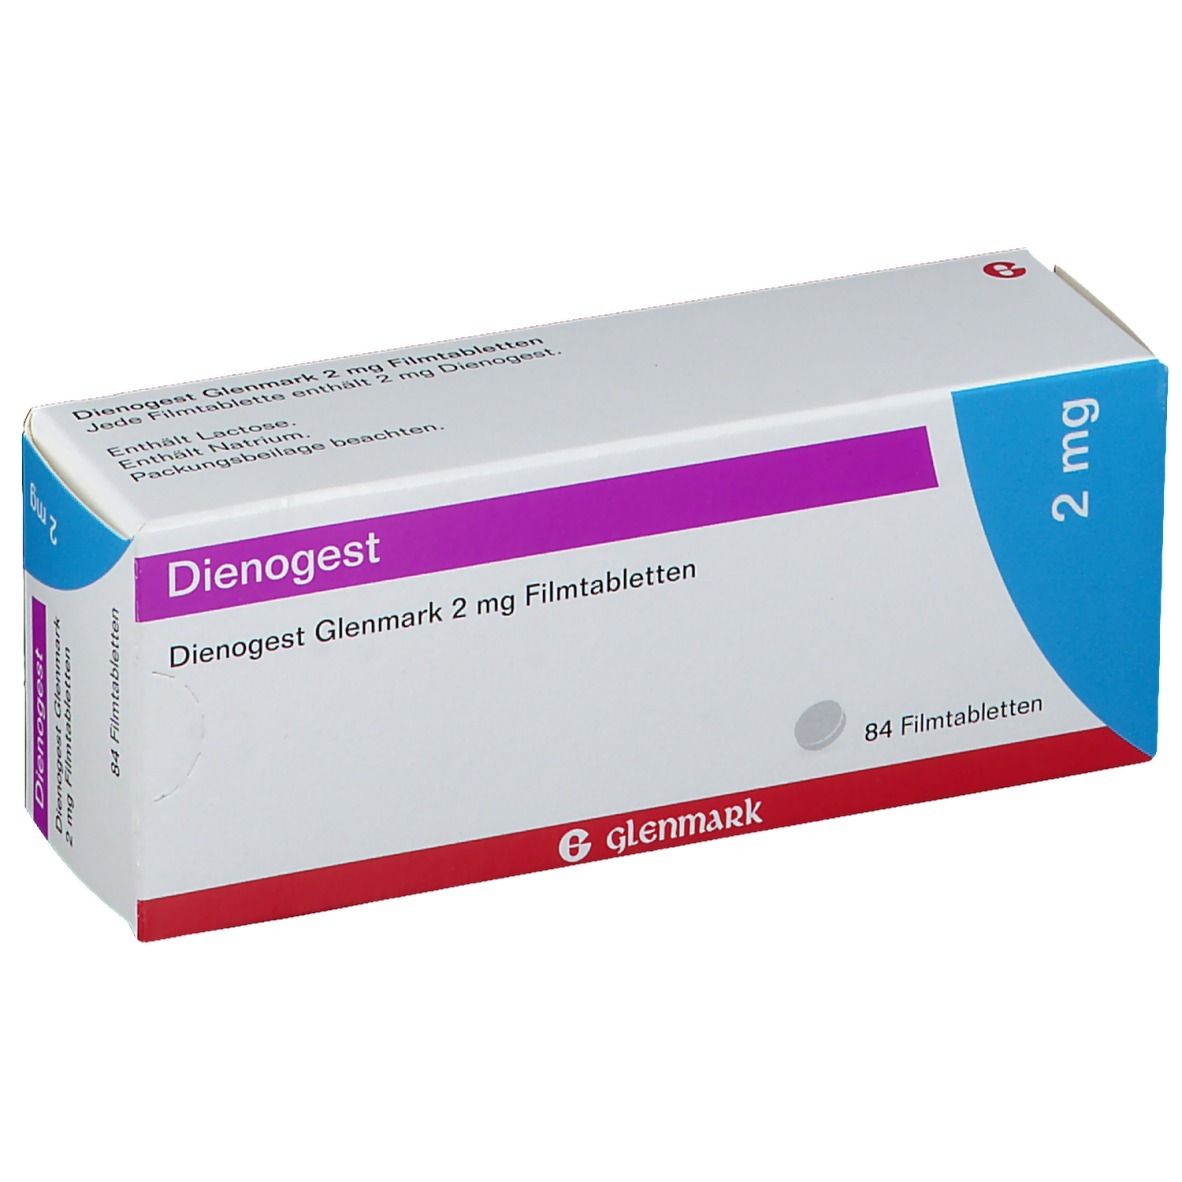 Dienogest Glenmark 2 mg